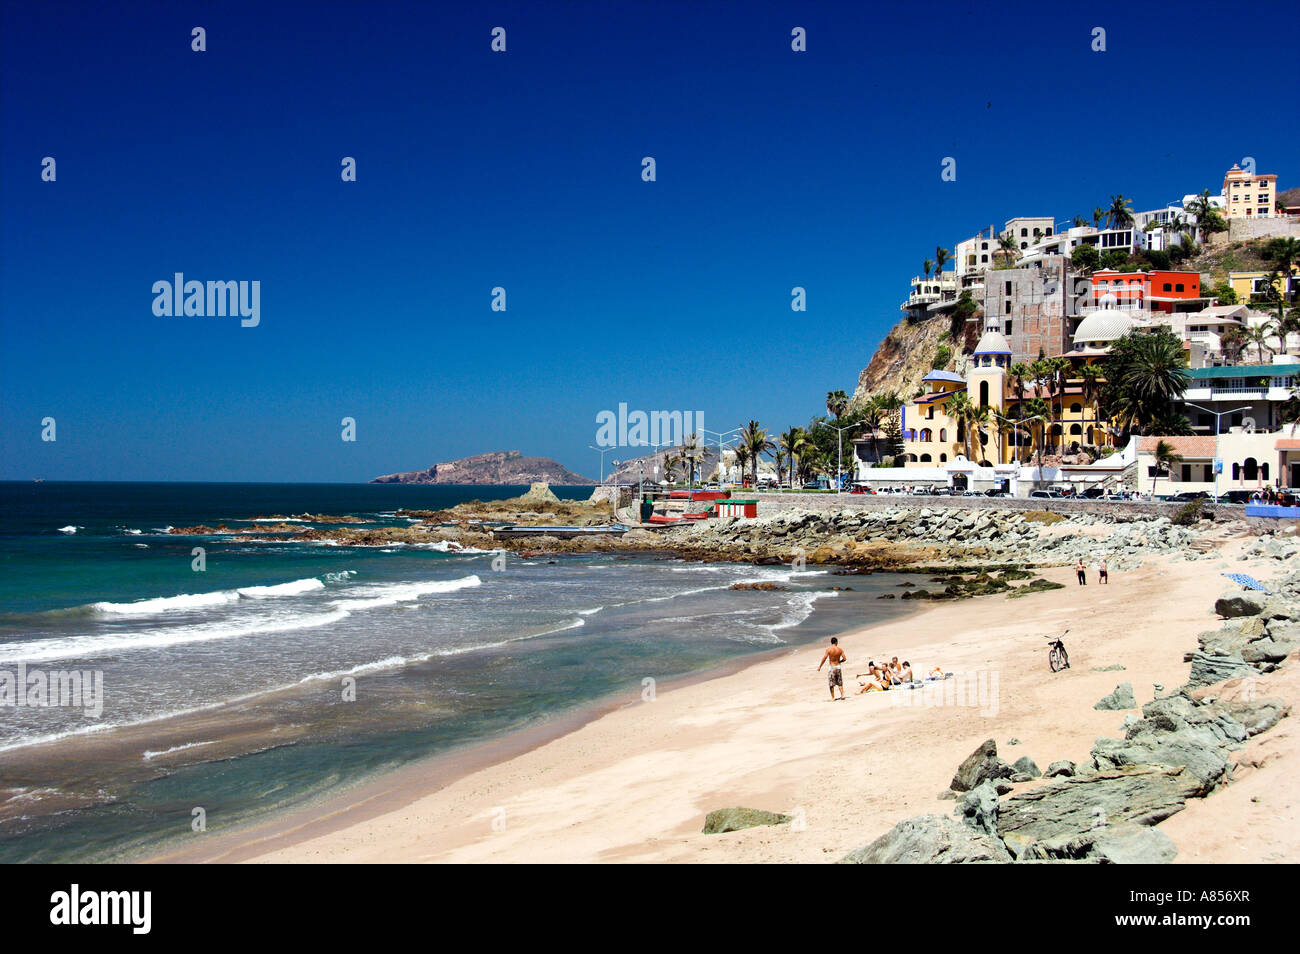 Beaches and coastal views in Mazatlan Mexico Stock Photo